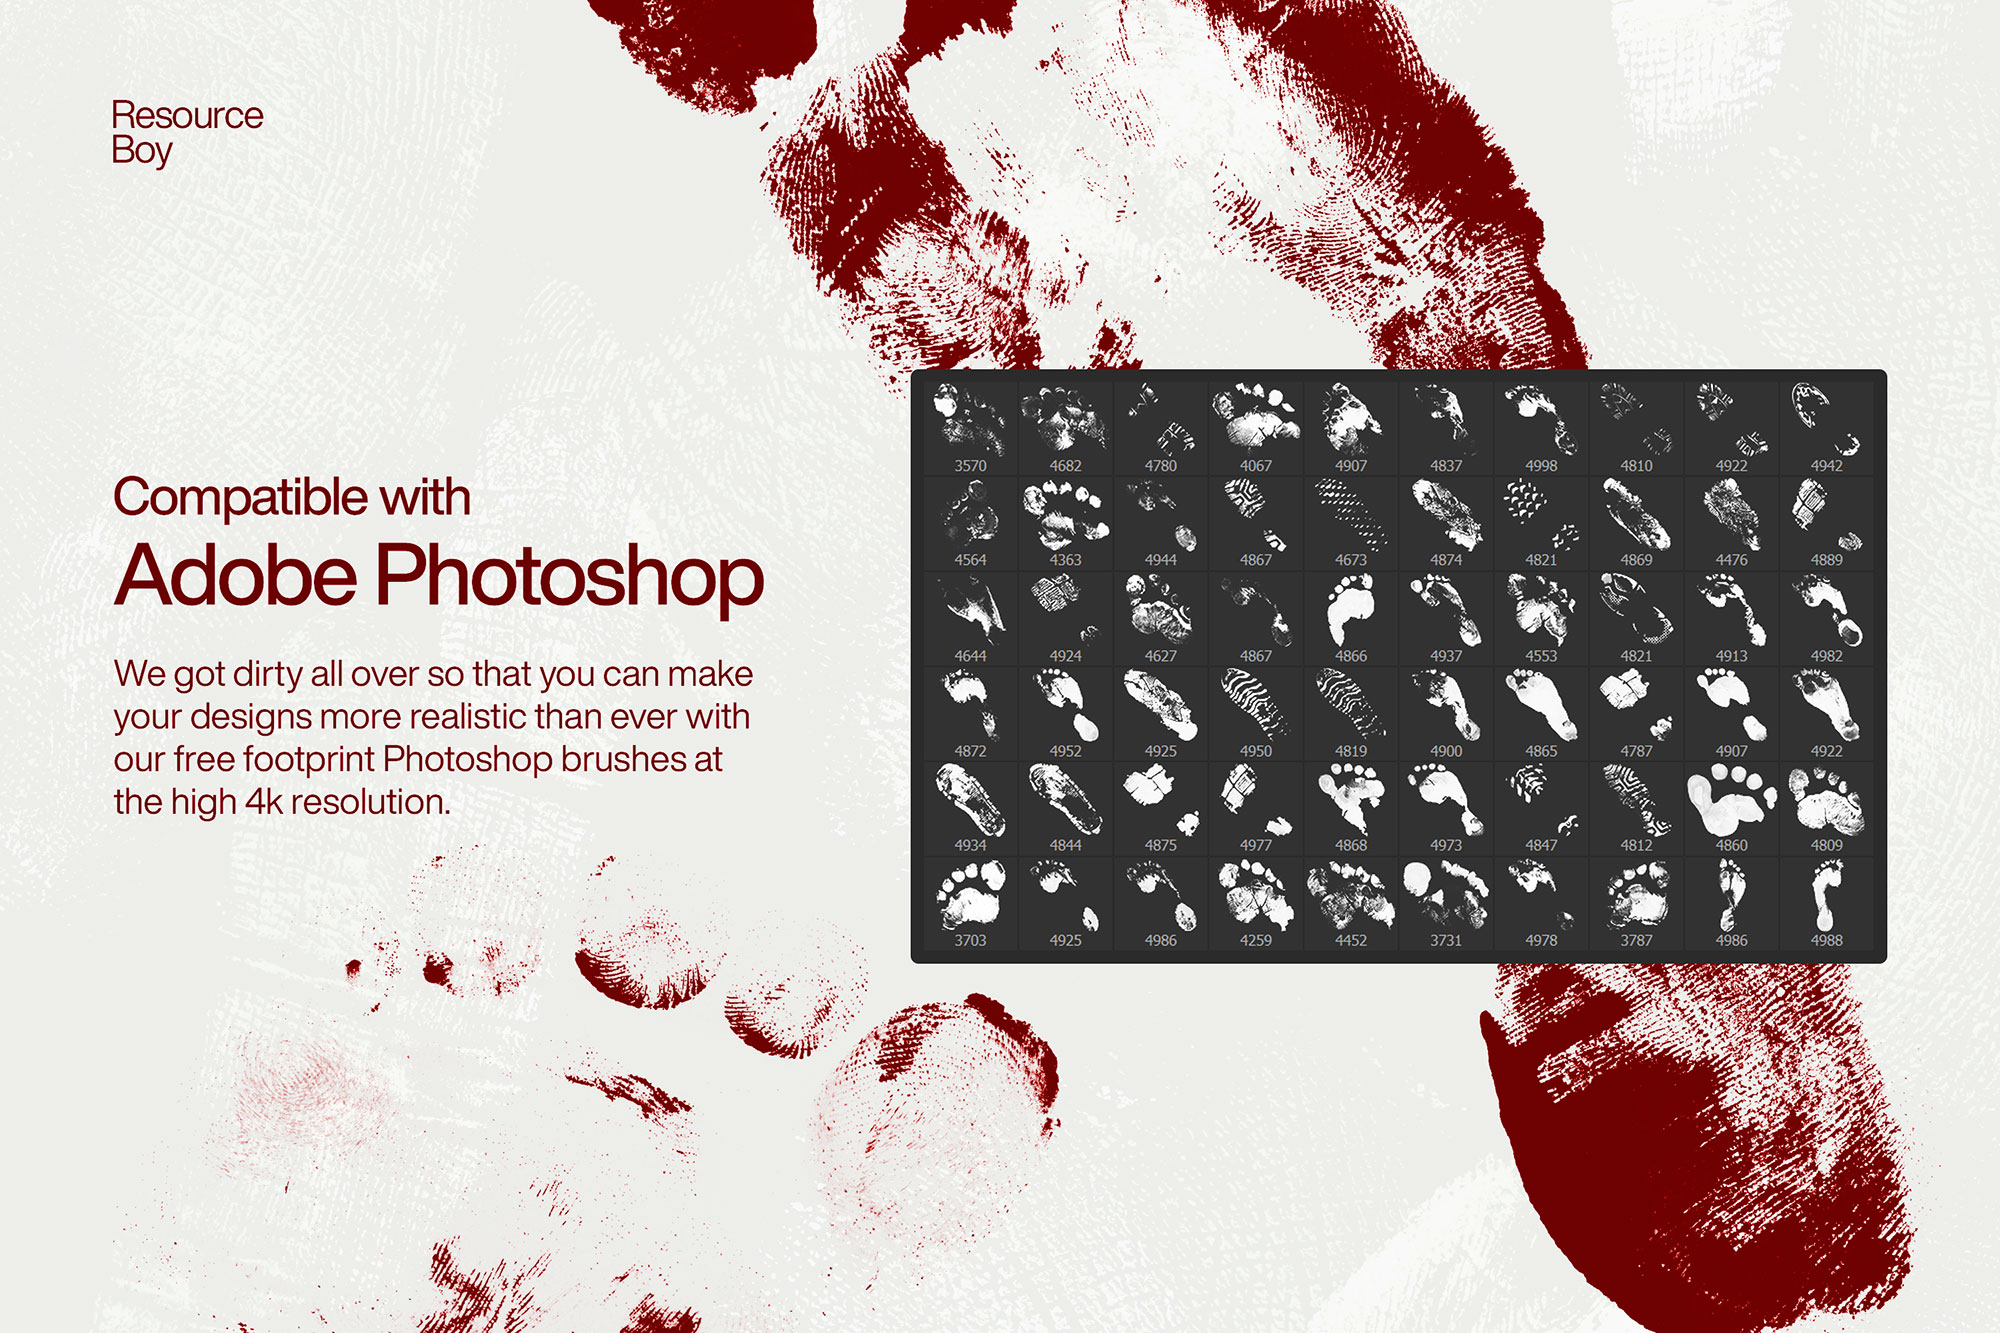 Free Footprint Photoshop Brushes